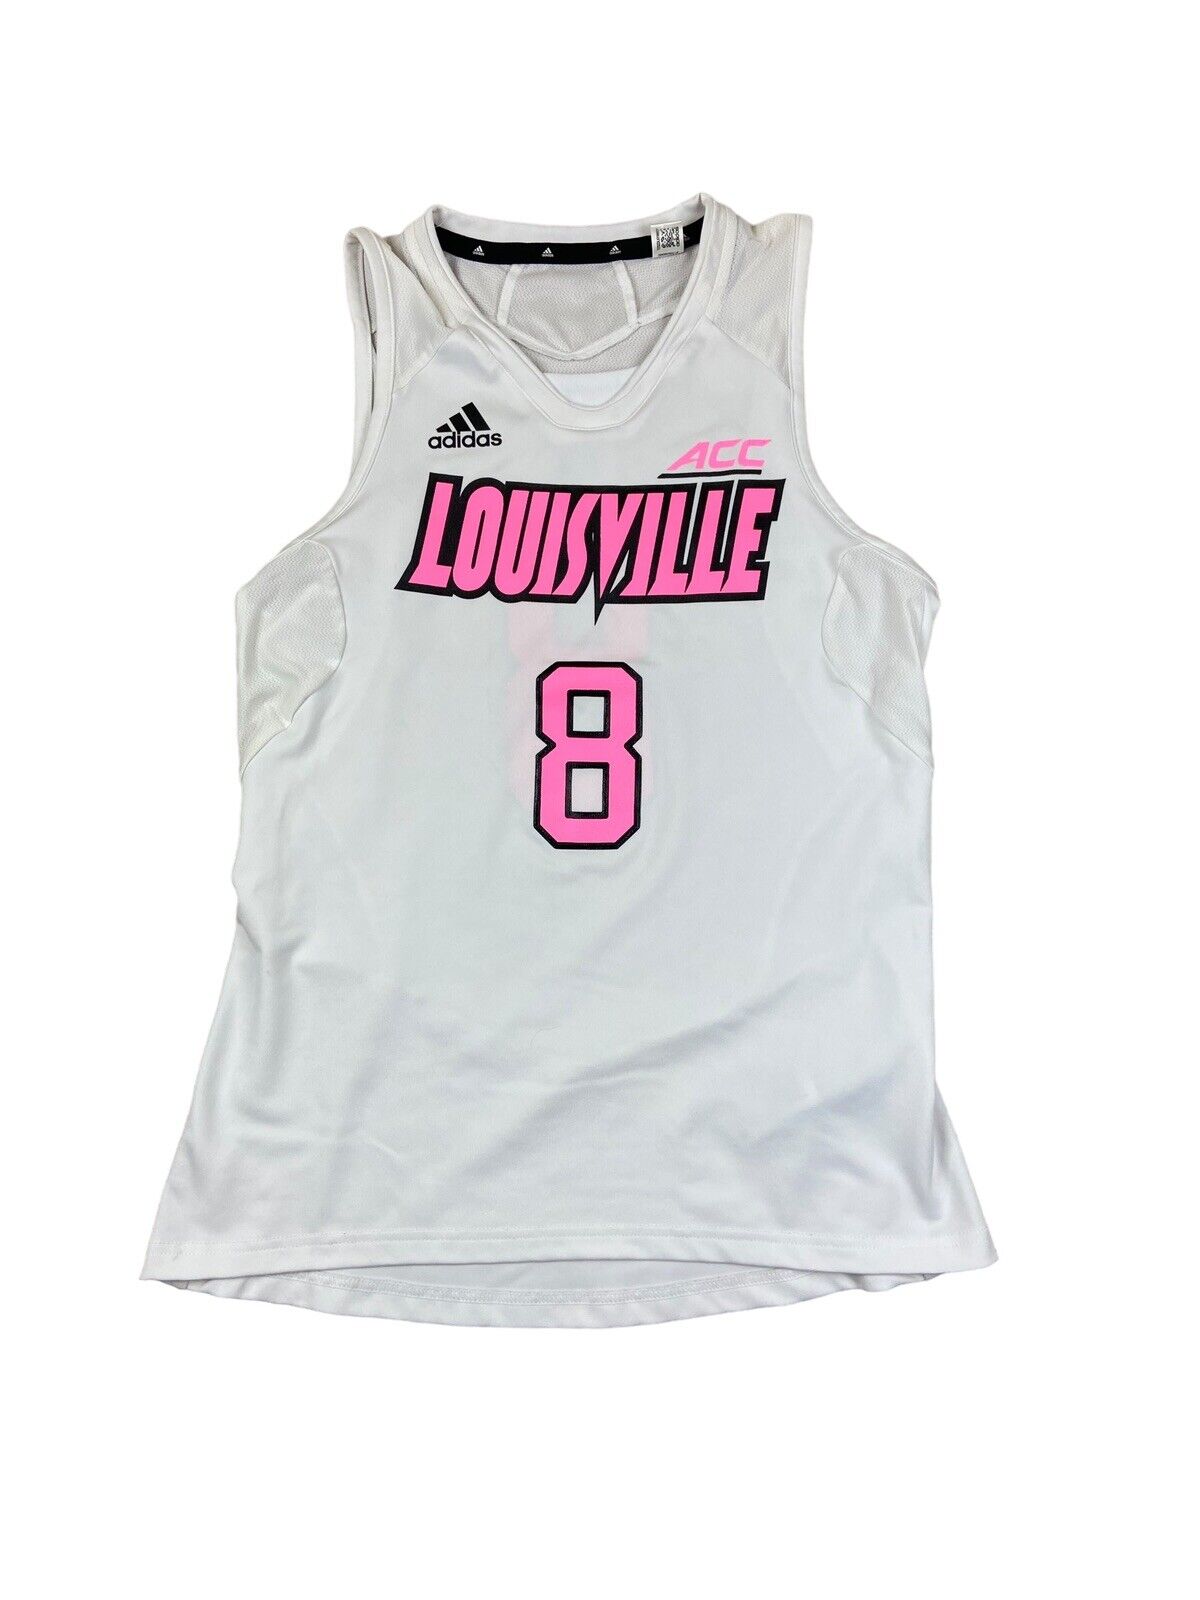 Adidas Girls Louisville Cardinals Women's basketball jersey M